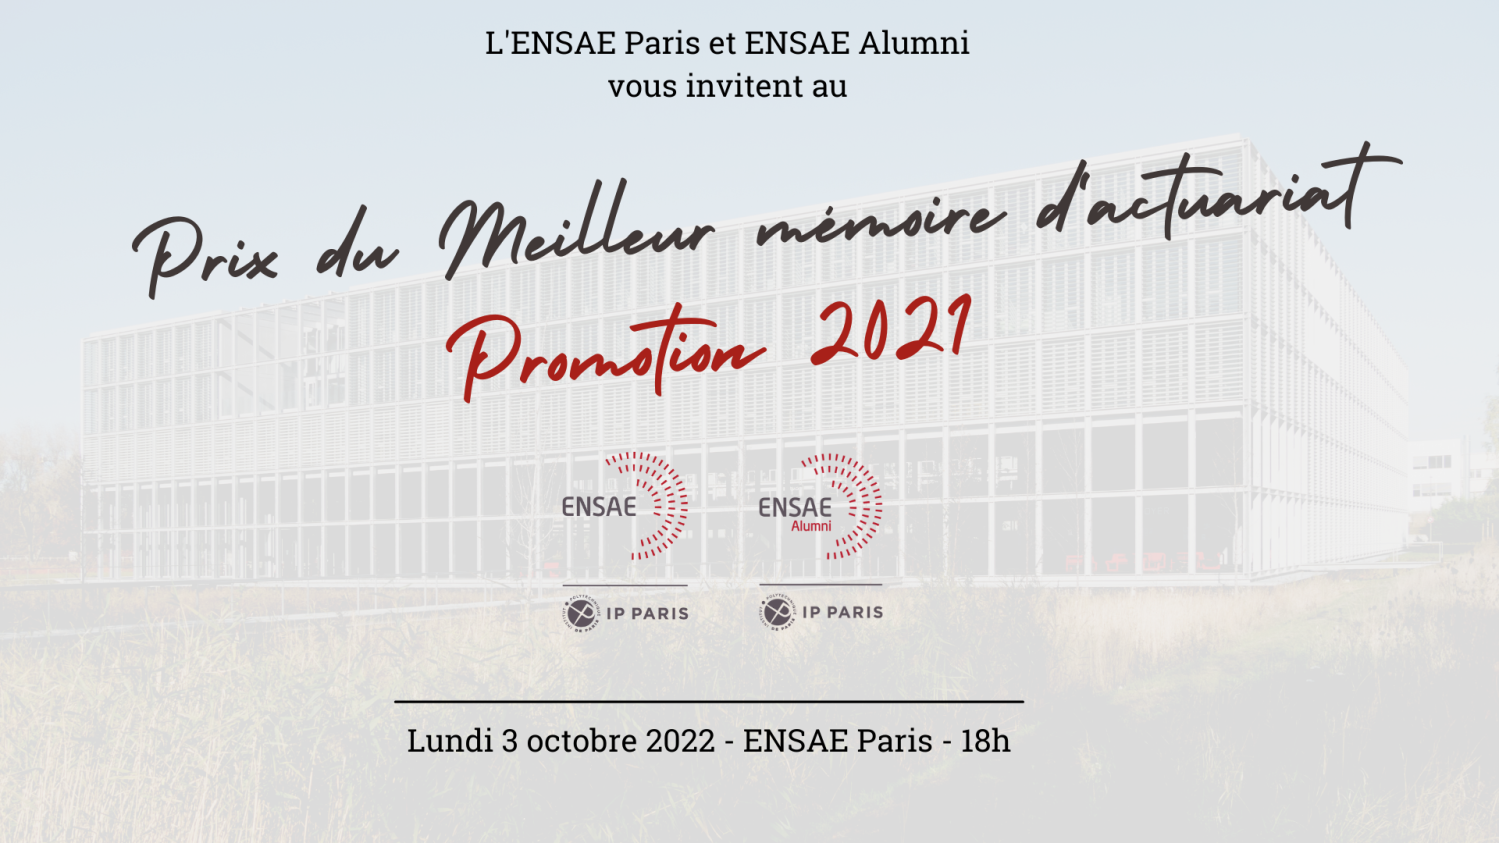 ENSAE Alumni 2022 Annual General Meeting